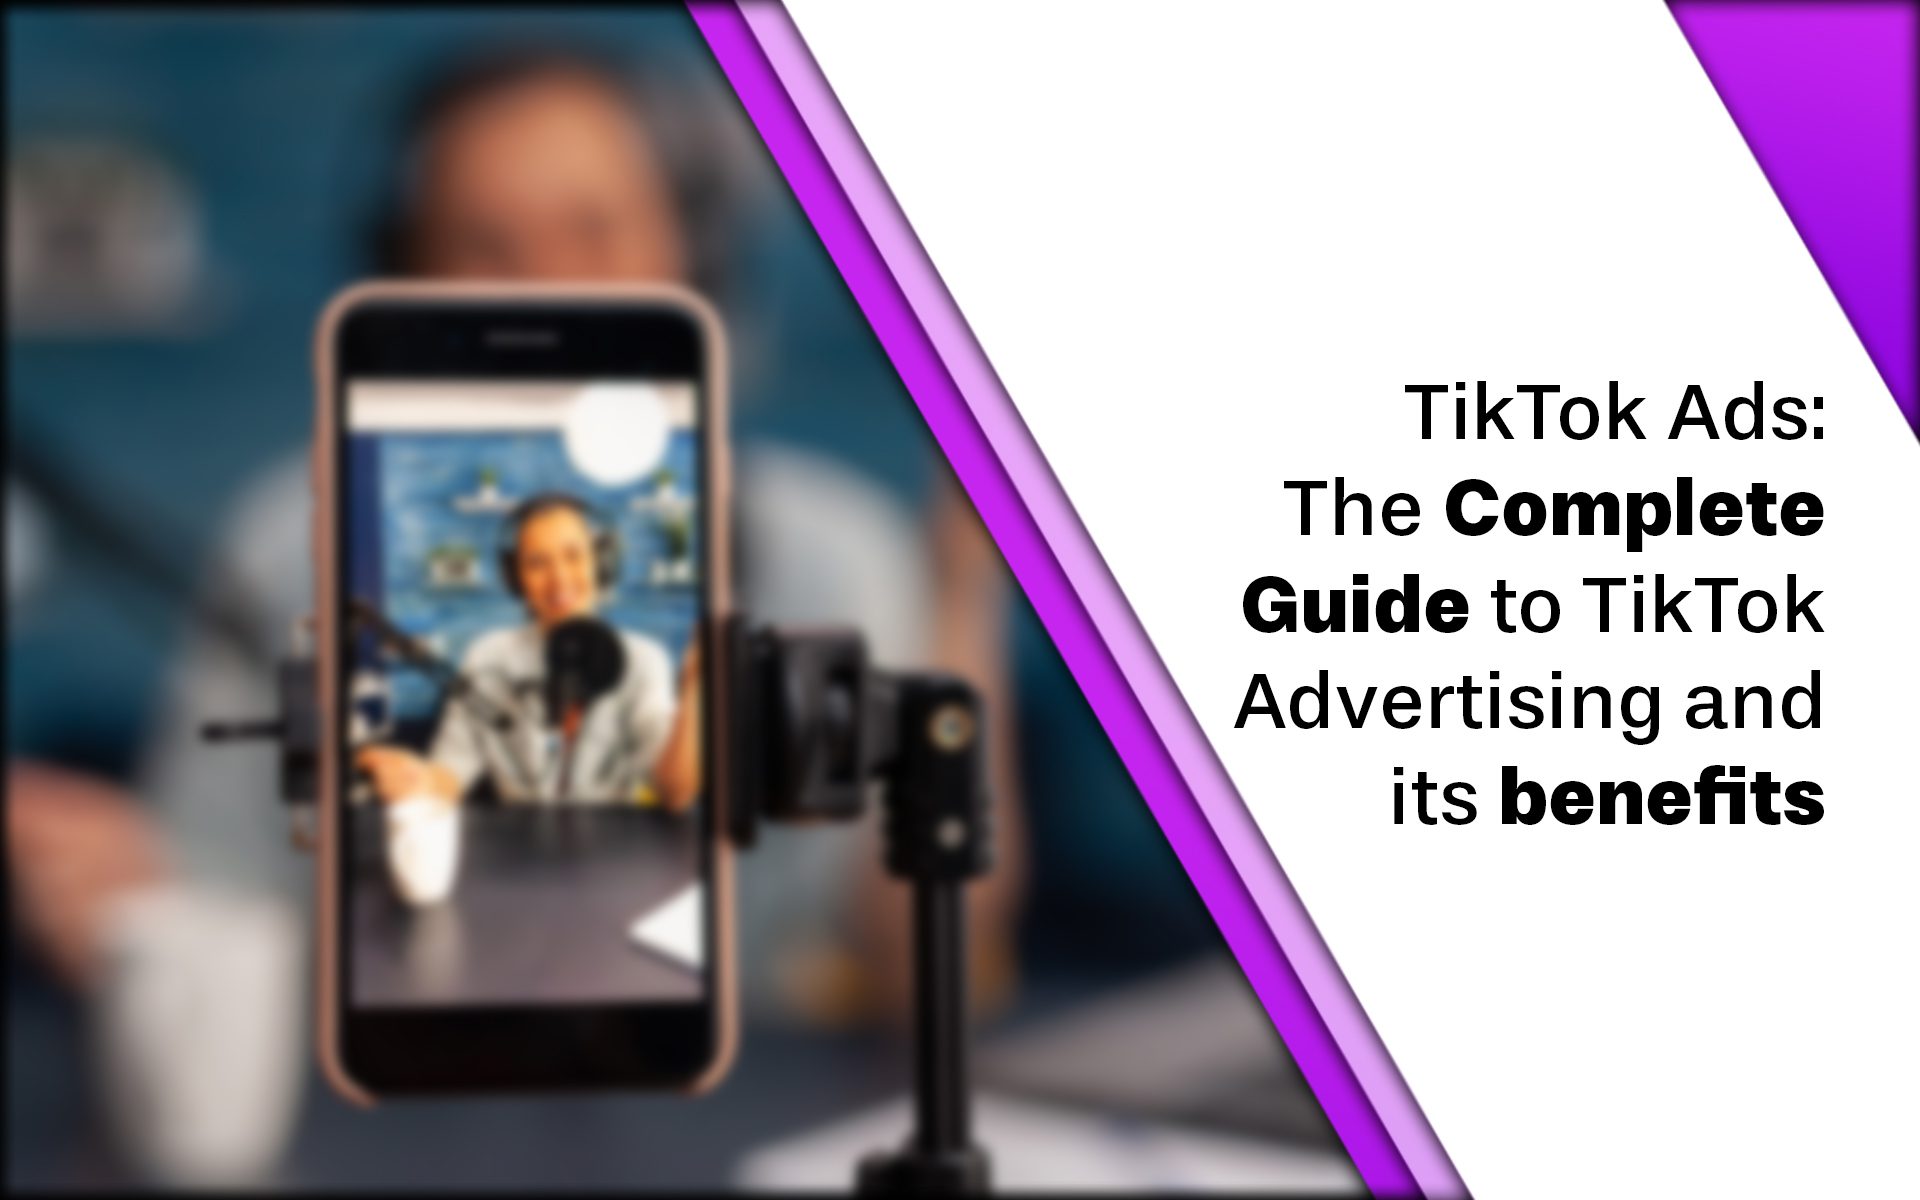 Guide to TikTok Advertising